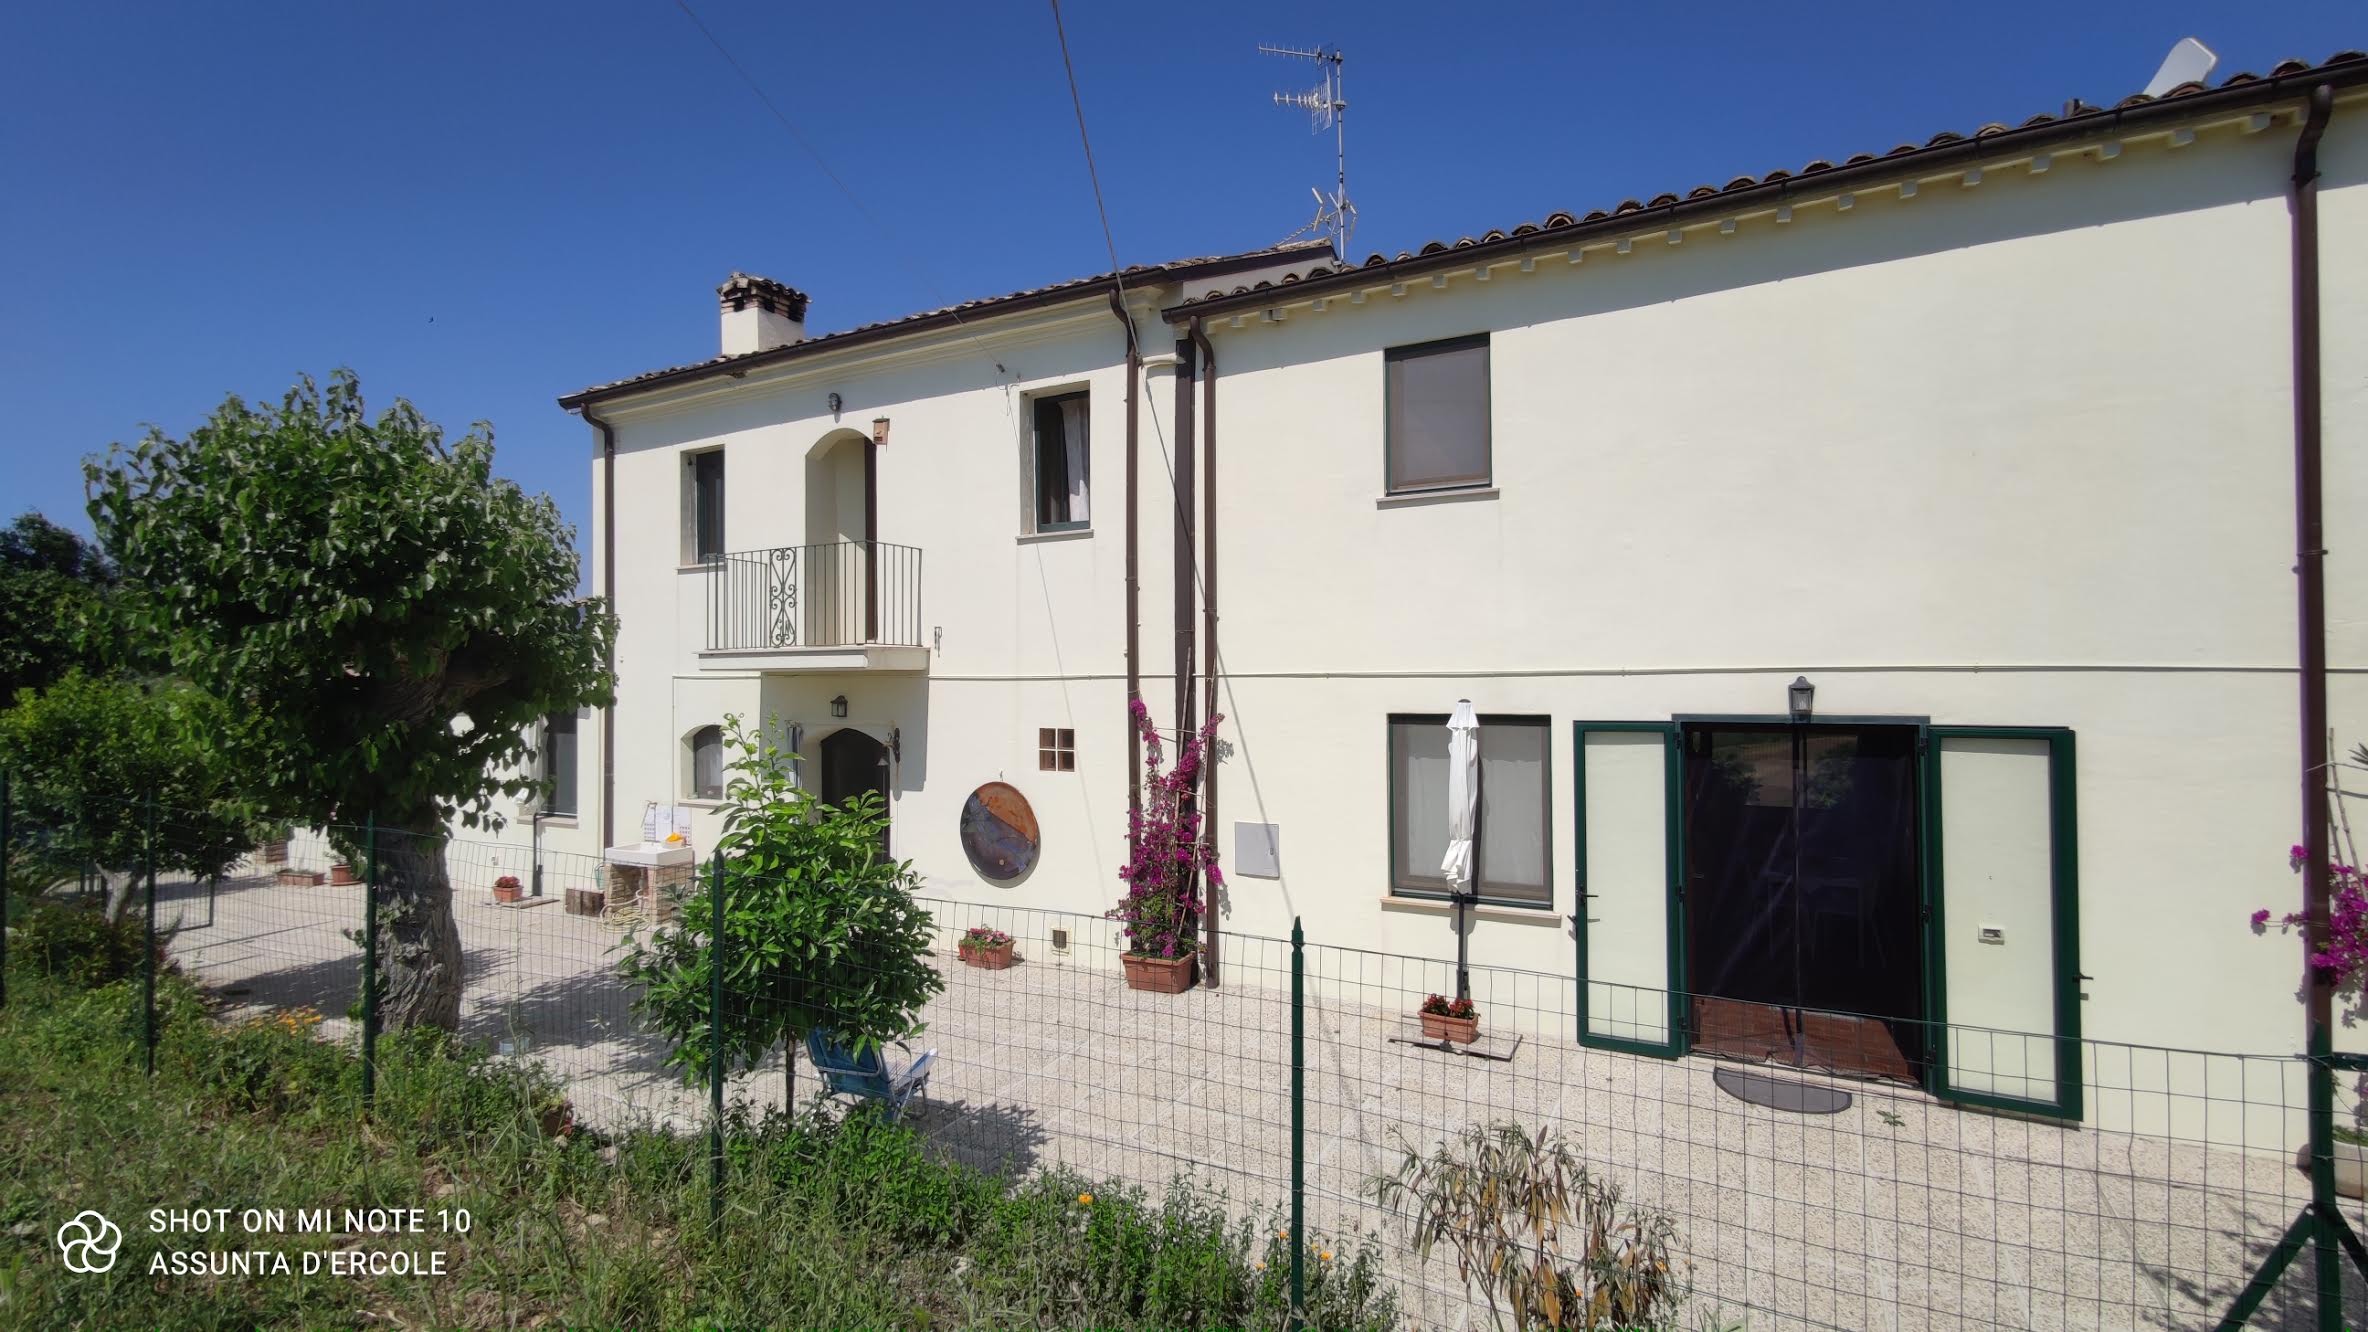 Rif 1352 Casalbordino (CH) – Landvilla in einer herrlichen idyllischen Umgebung € 320000